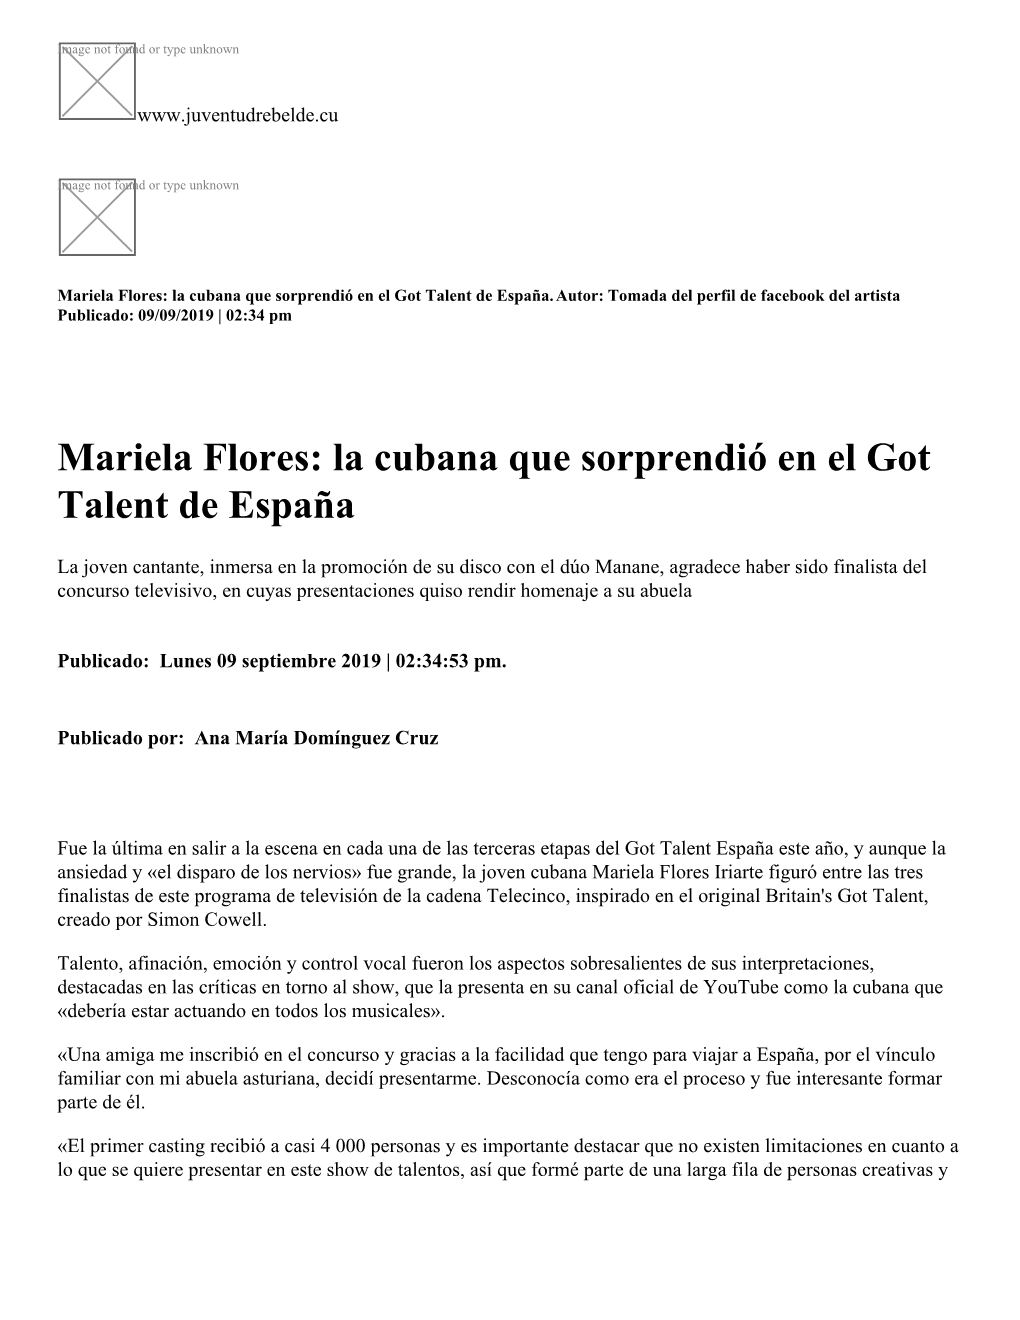 Mariela Flores: La Cubana Que Sorprendió En El Got Talent De España.Autor: Tomada Del Perfil De Facebook Del Artista Publicado: 09/09/2019 | 02:34 Pm